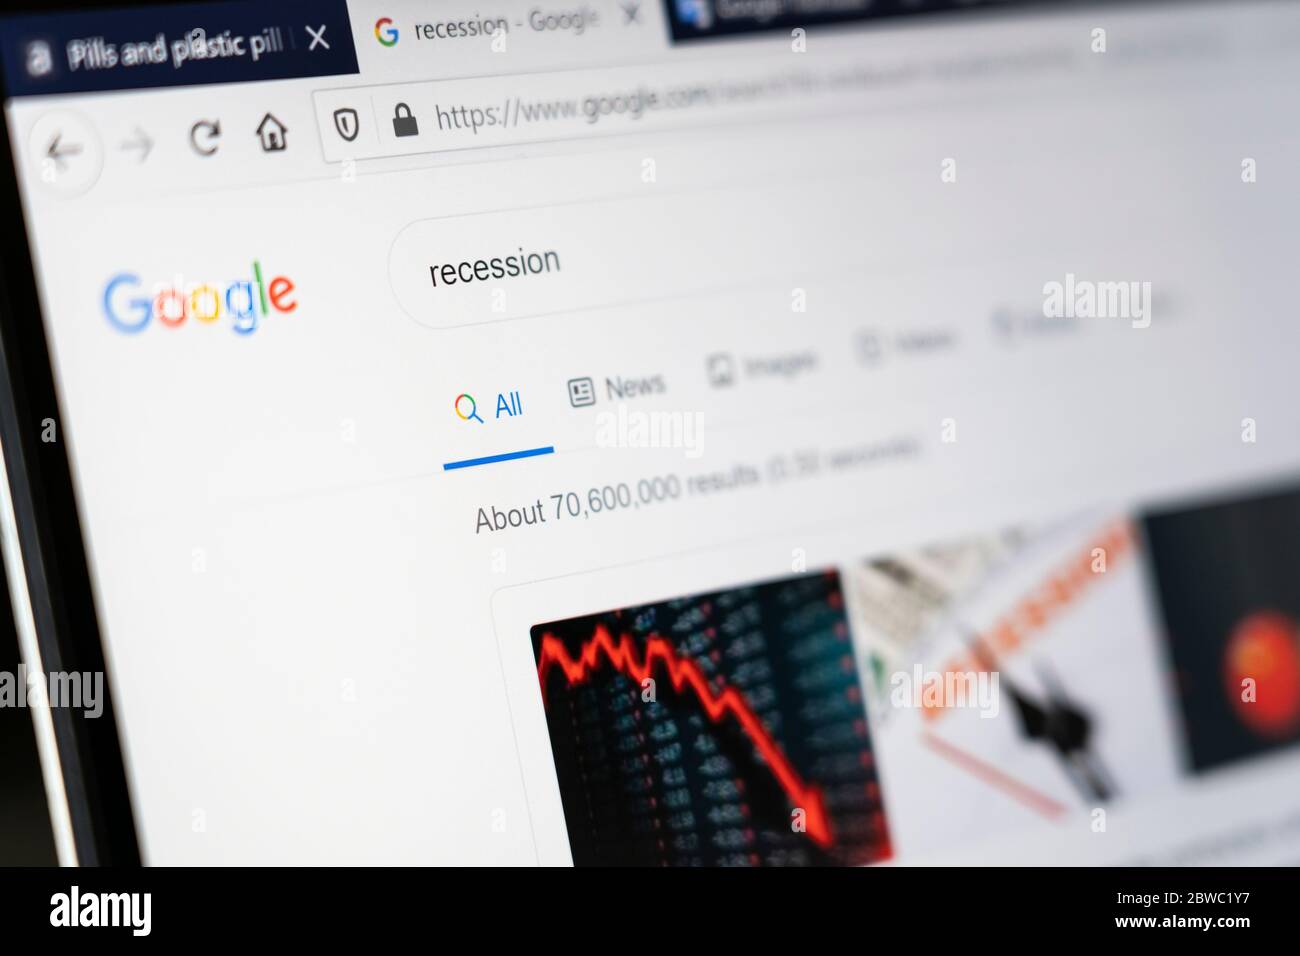 Un écran d'ordinateur montrant le mot'Recession' comme un terme de recherche de moteur de recherche Google avec le nombre de résultats de recherche affichés Banque D'Images